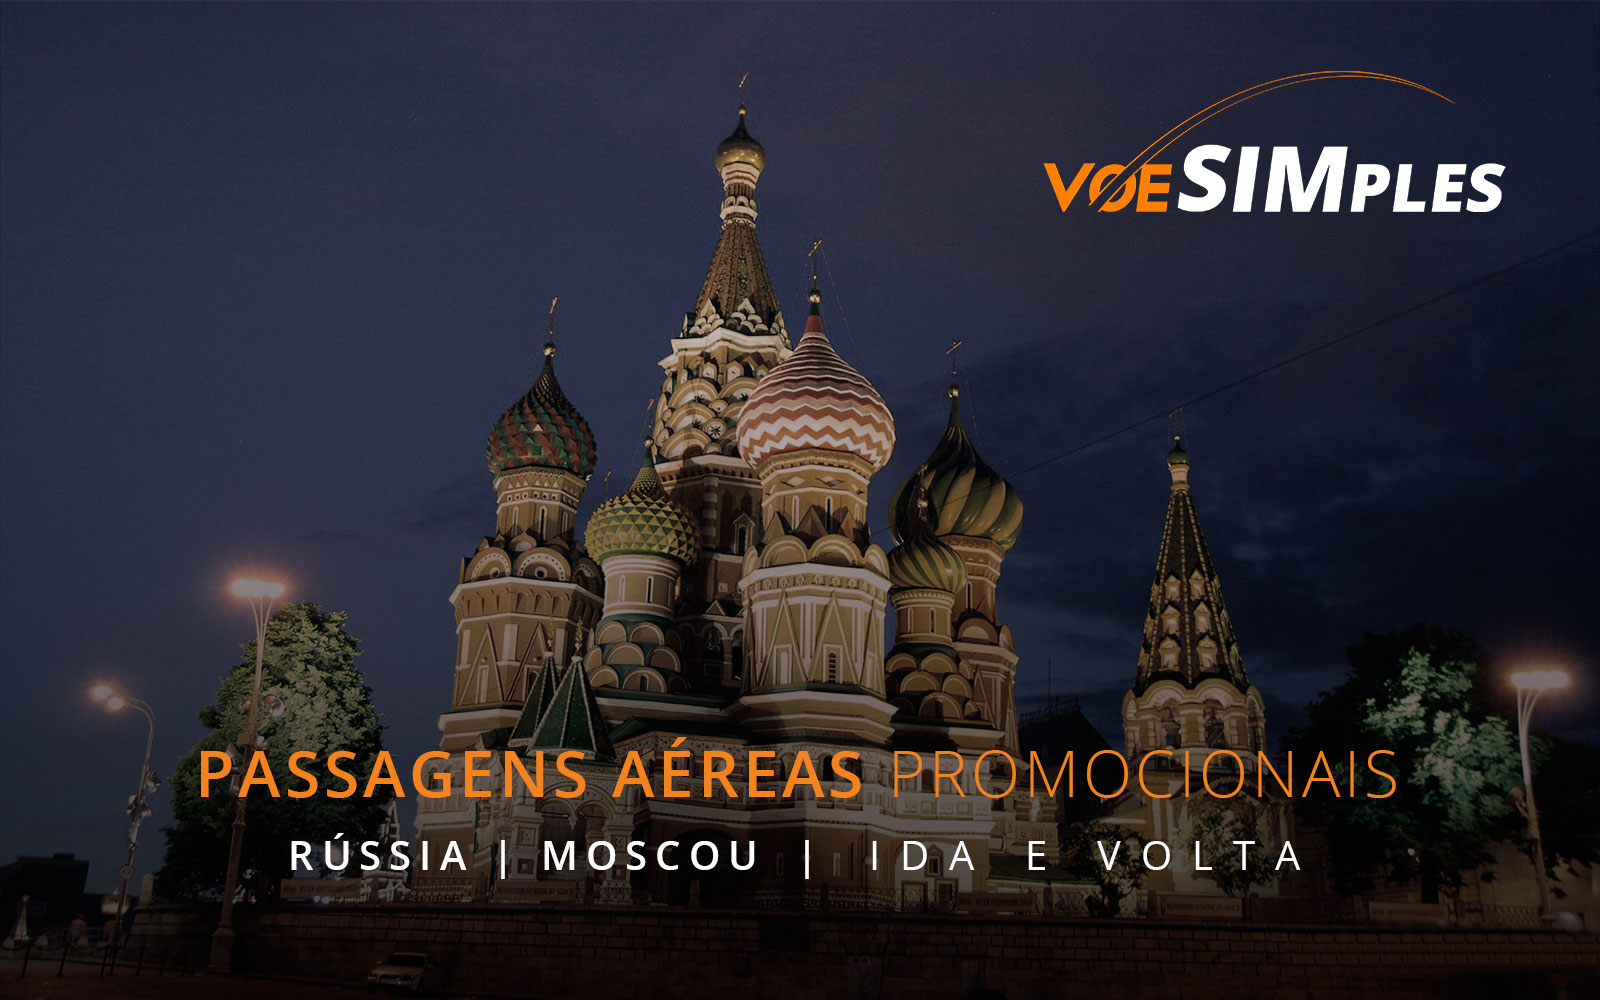 passagens-aereas-promocionais-moscou-russia-voe-simples-passagens-aereas-baratas-promocao-russia-moscou